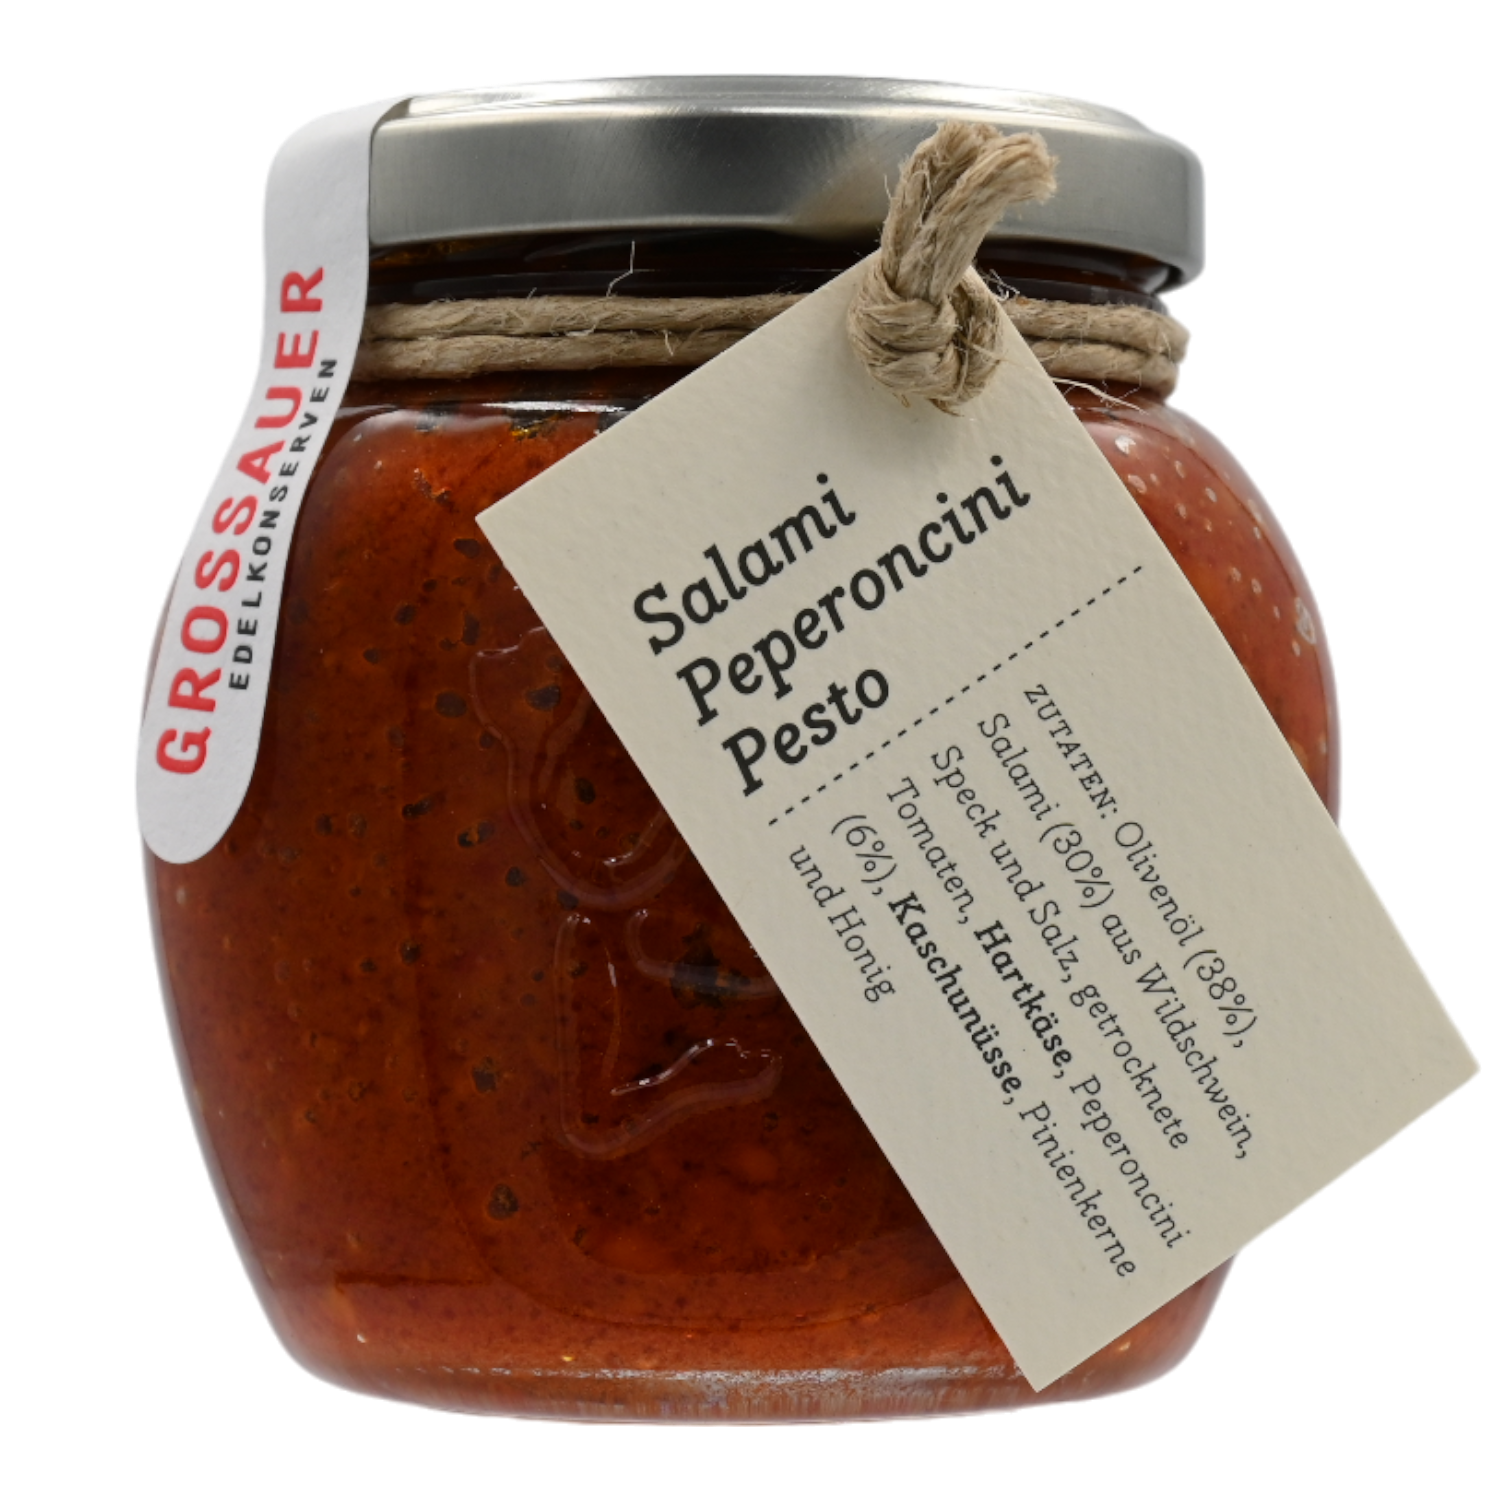 Salami Pepperoncini Pesto, Grossauer Edelkonserven 0,17 kg